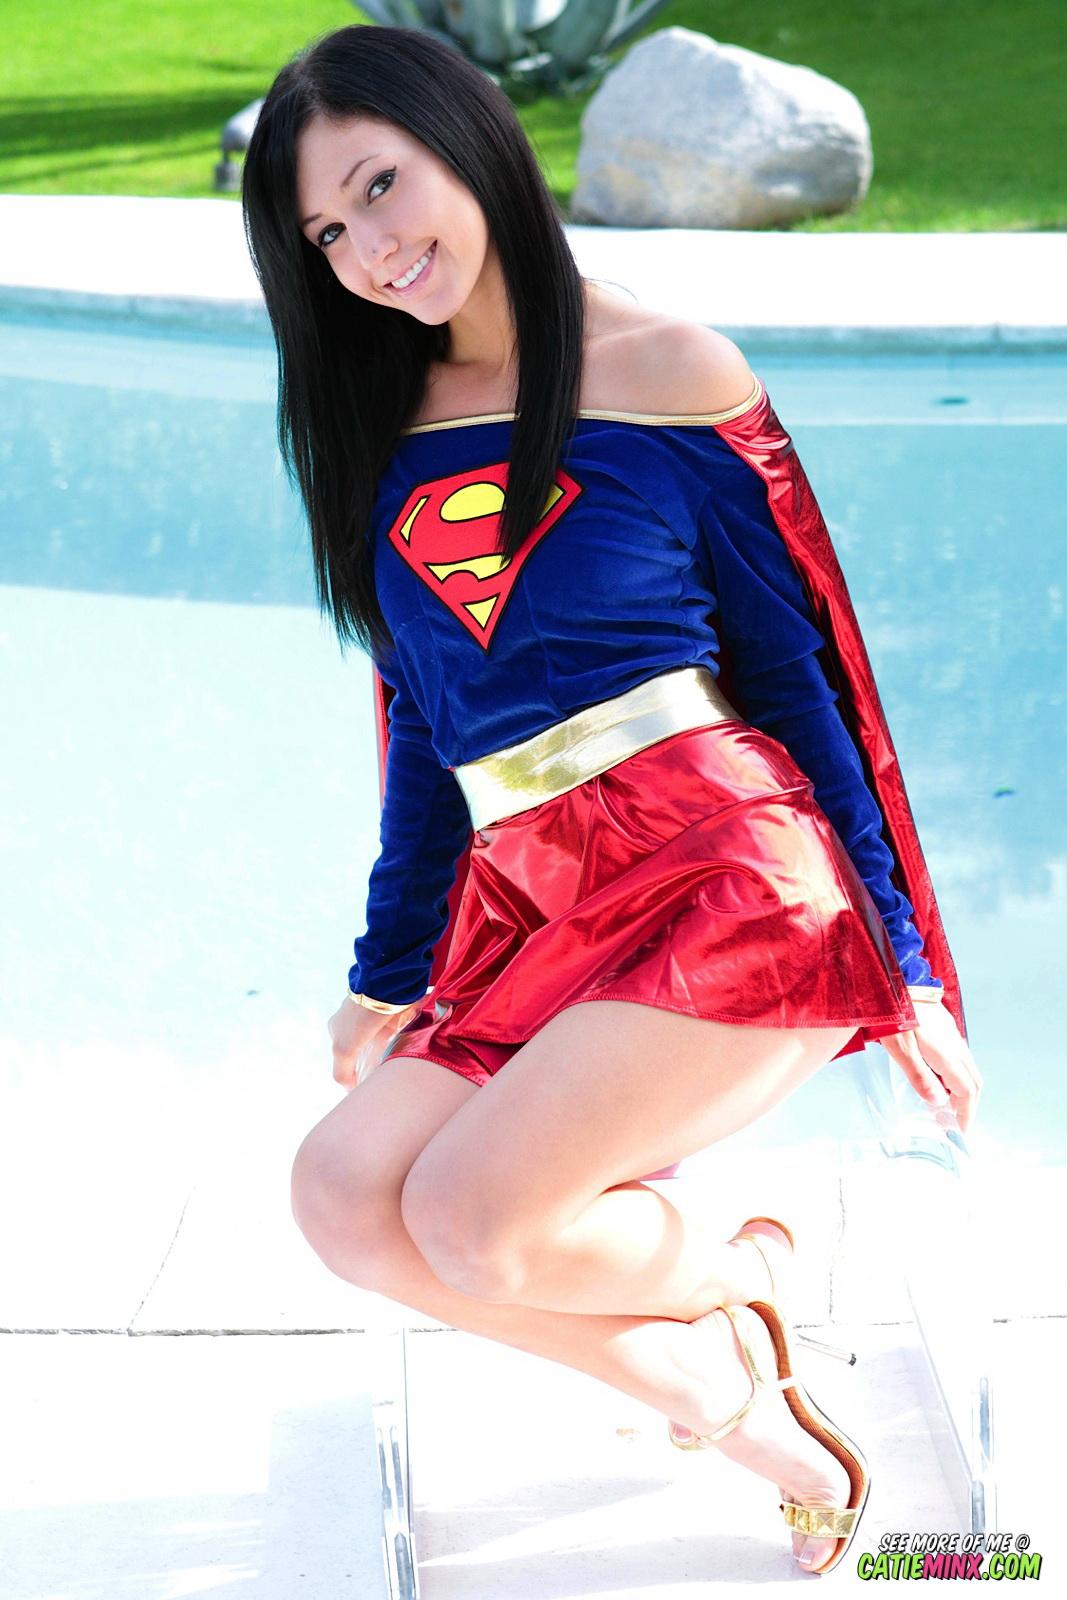 Sanftmütige Streberin Catie Minx enthüllt ihre super-frechen Kräfte als Supergirl
 #53722641